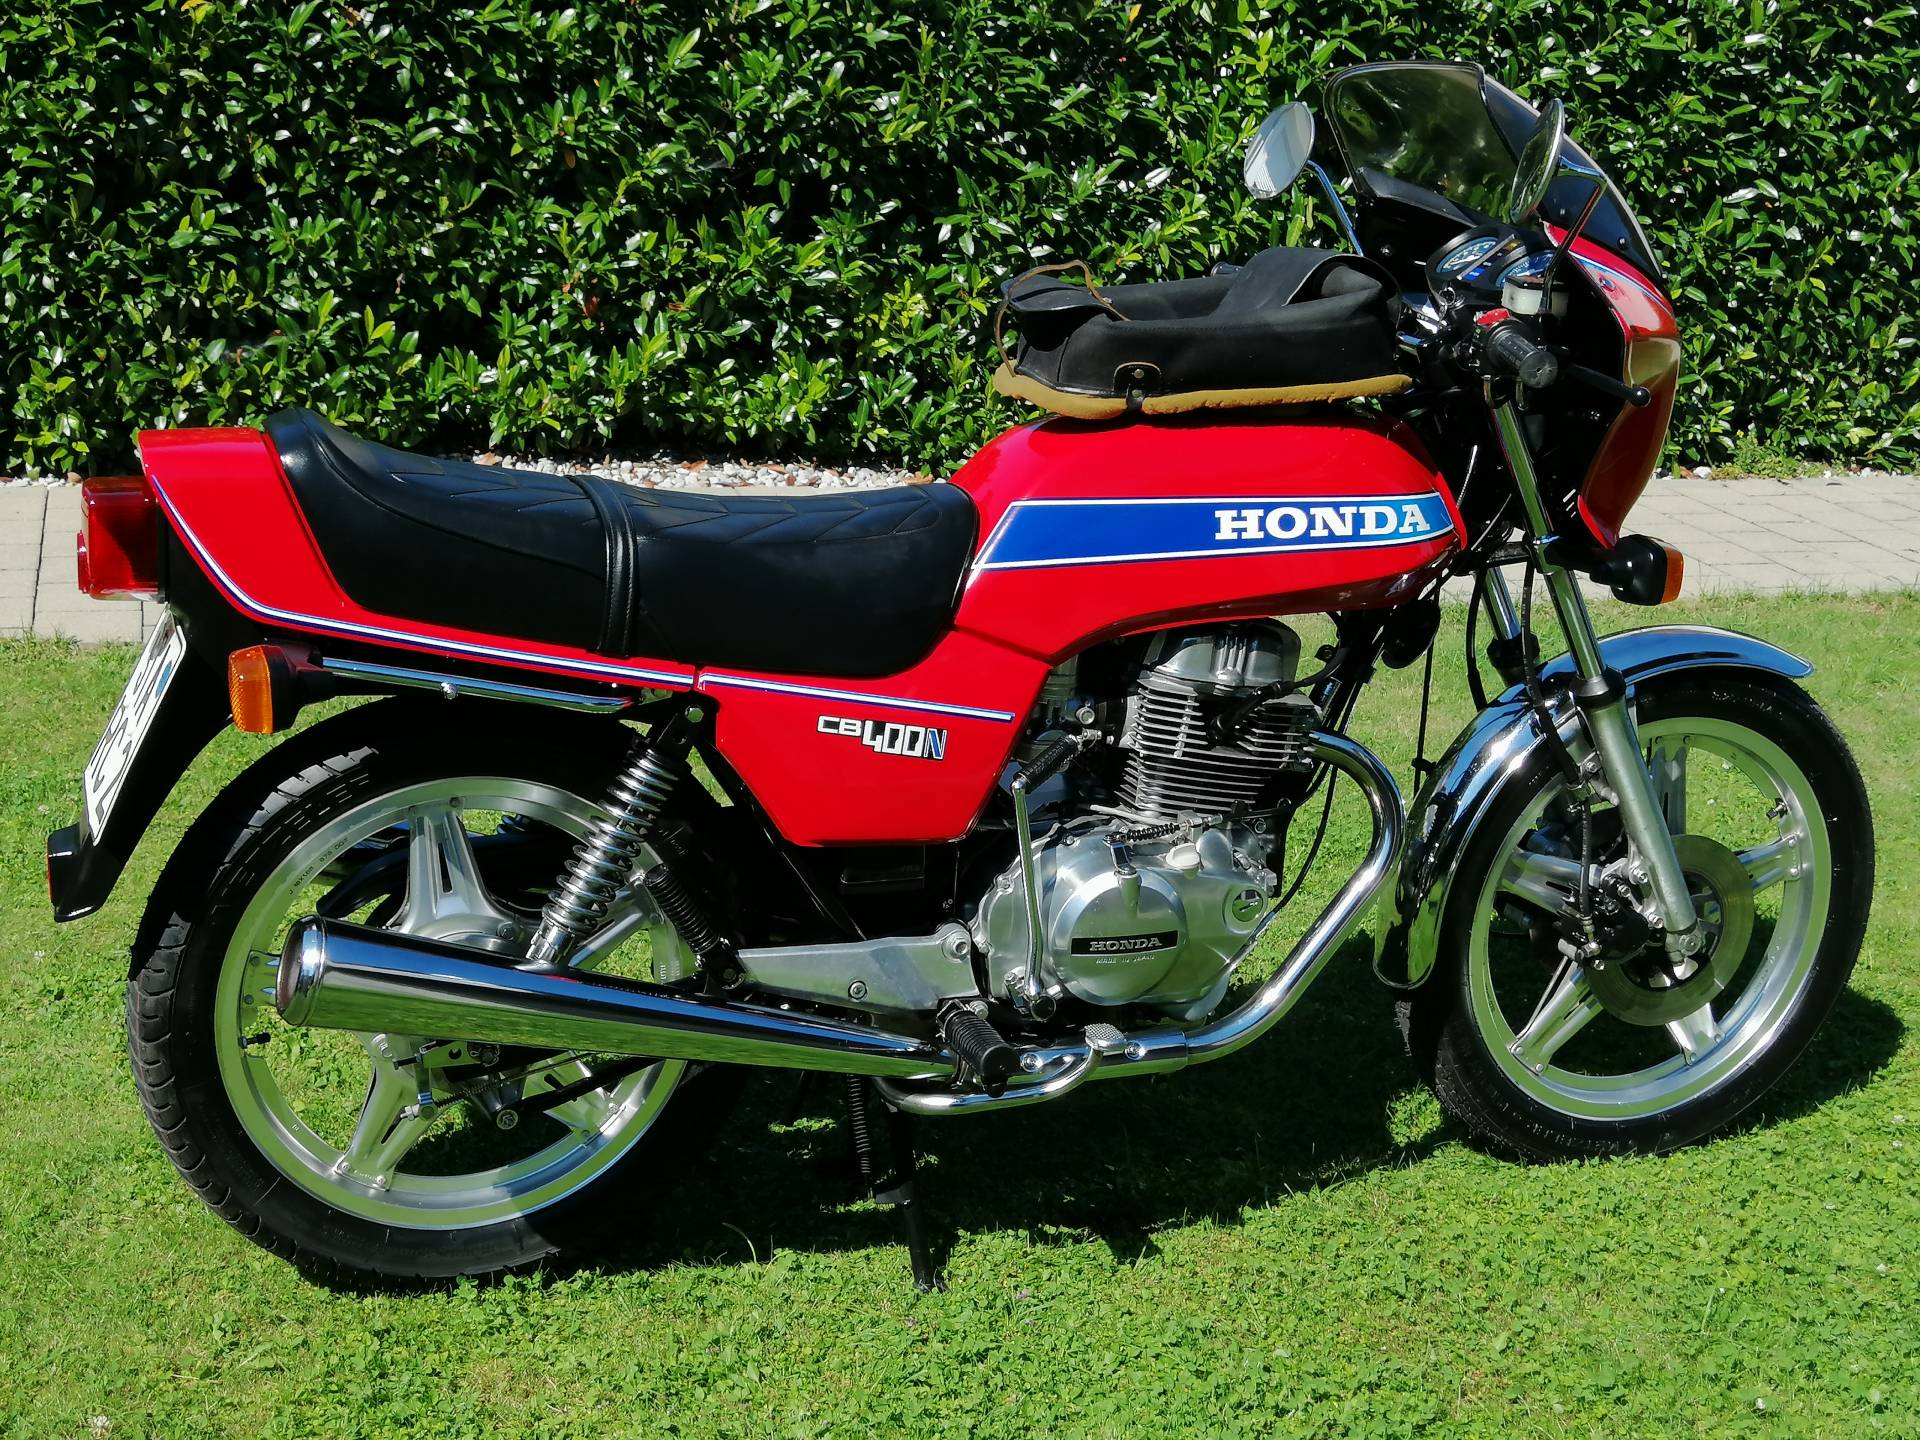 Honda CB 400 N (1980) für EUR 2.300 kaufen